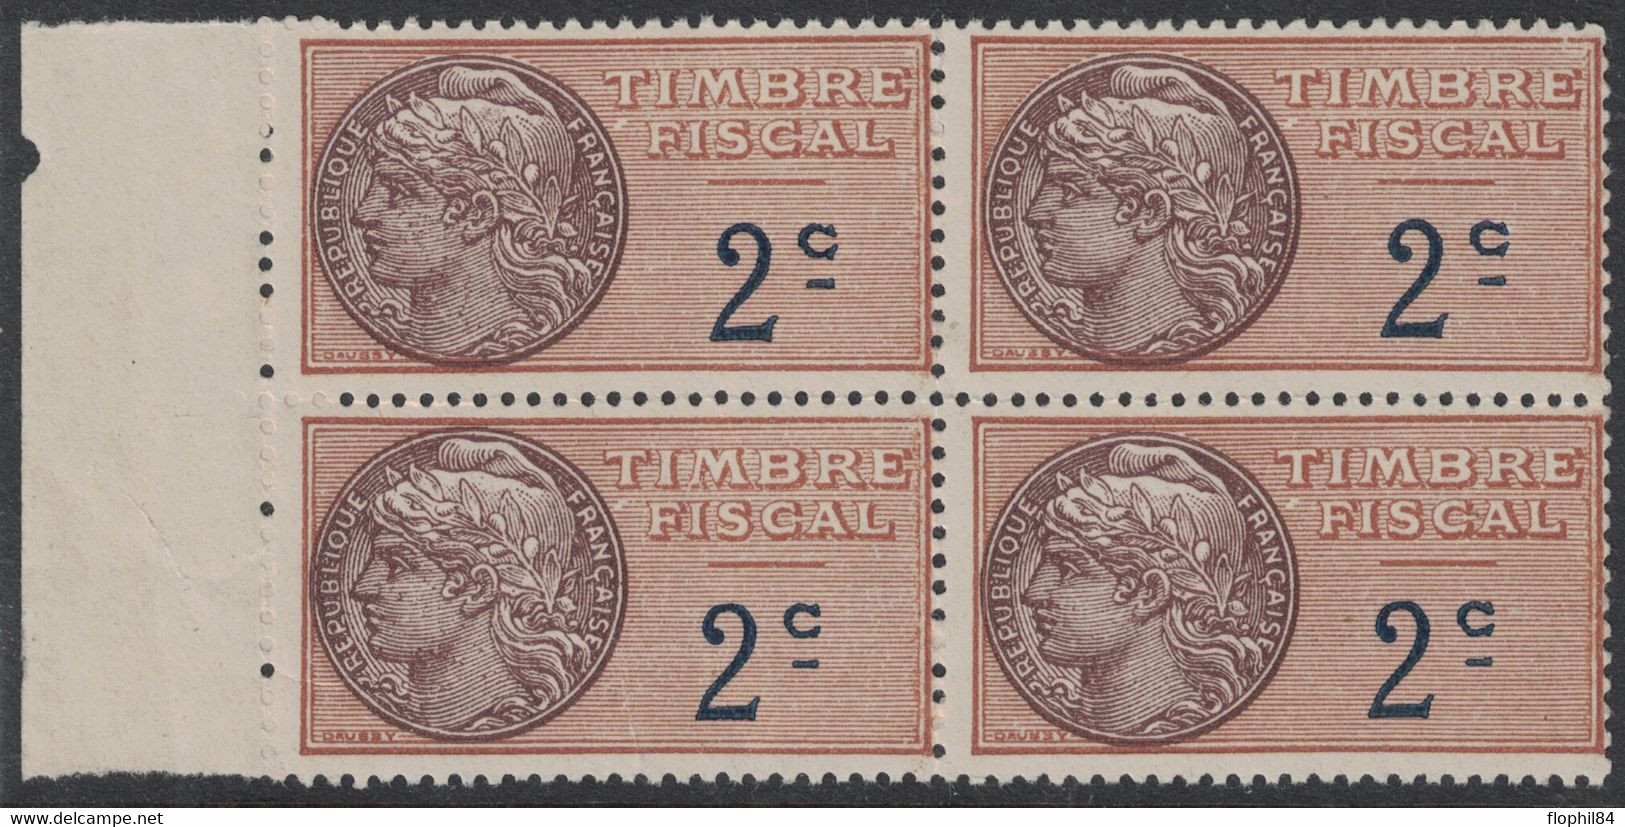 TIMBRE MOBILE - FISCAUX GENERAUX - N°2 - BLOC DE 4 BORD DE FEUILLE NEUF AVEC GOMME SANS TRACE - COTE 60€. - Stamps